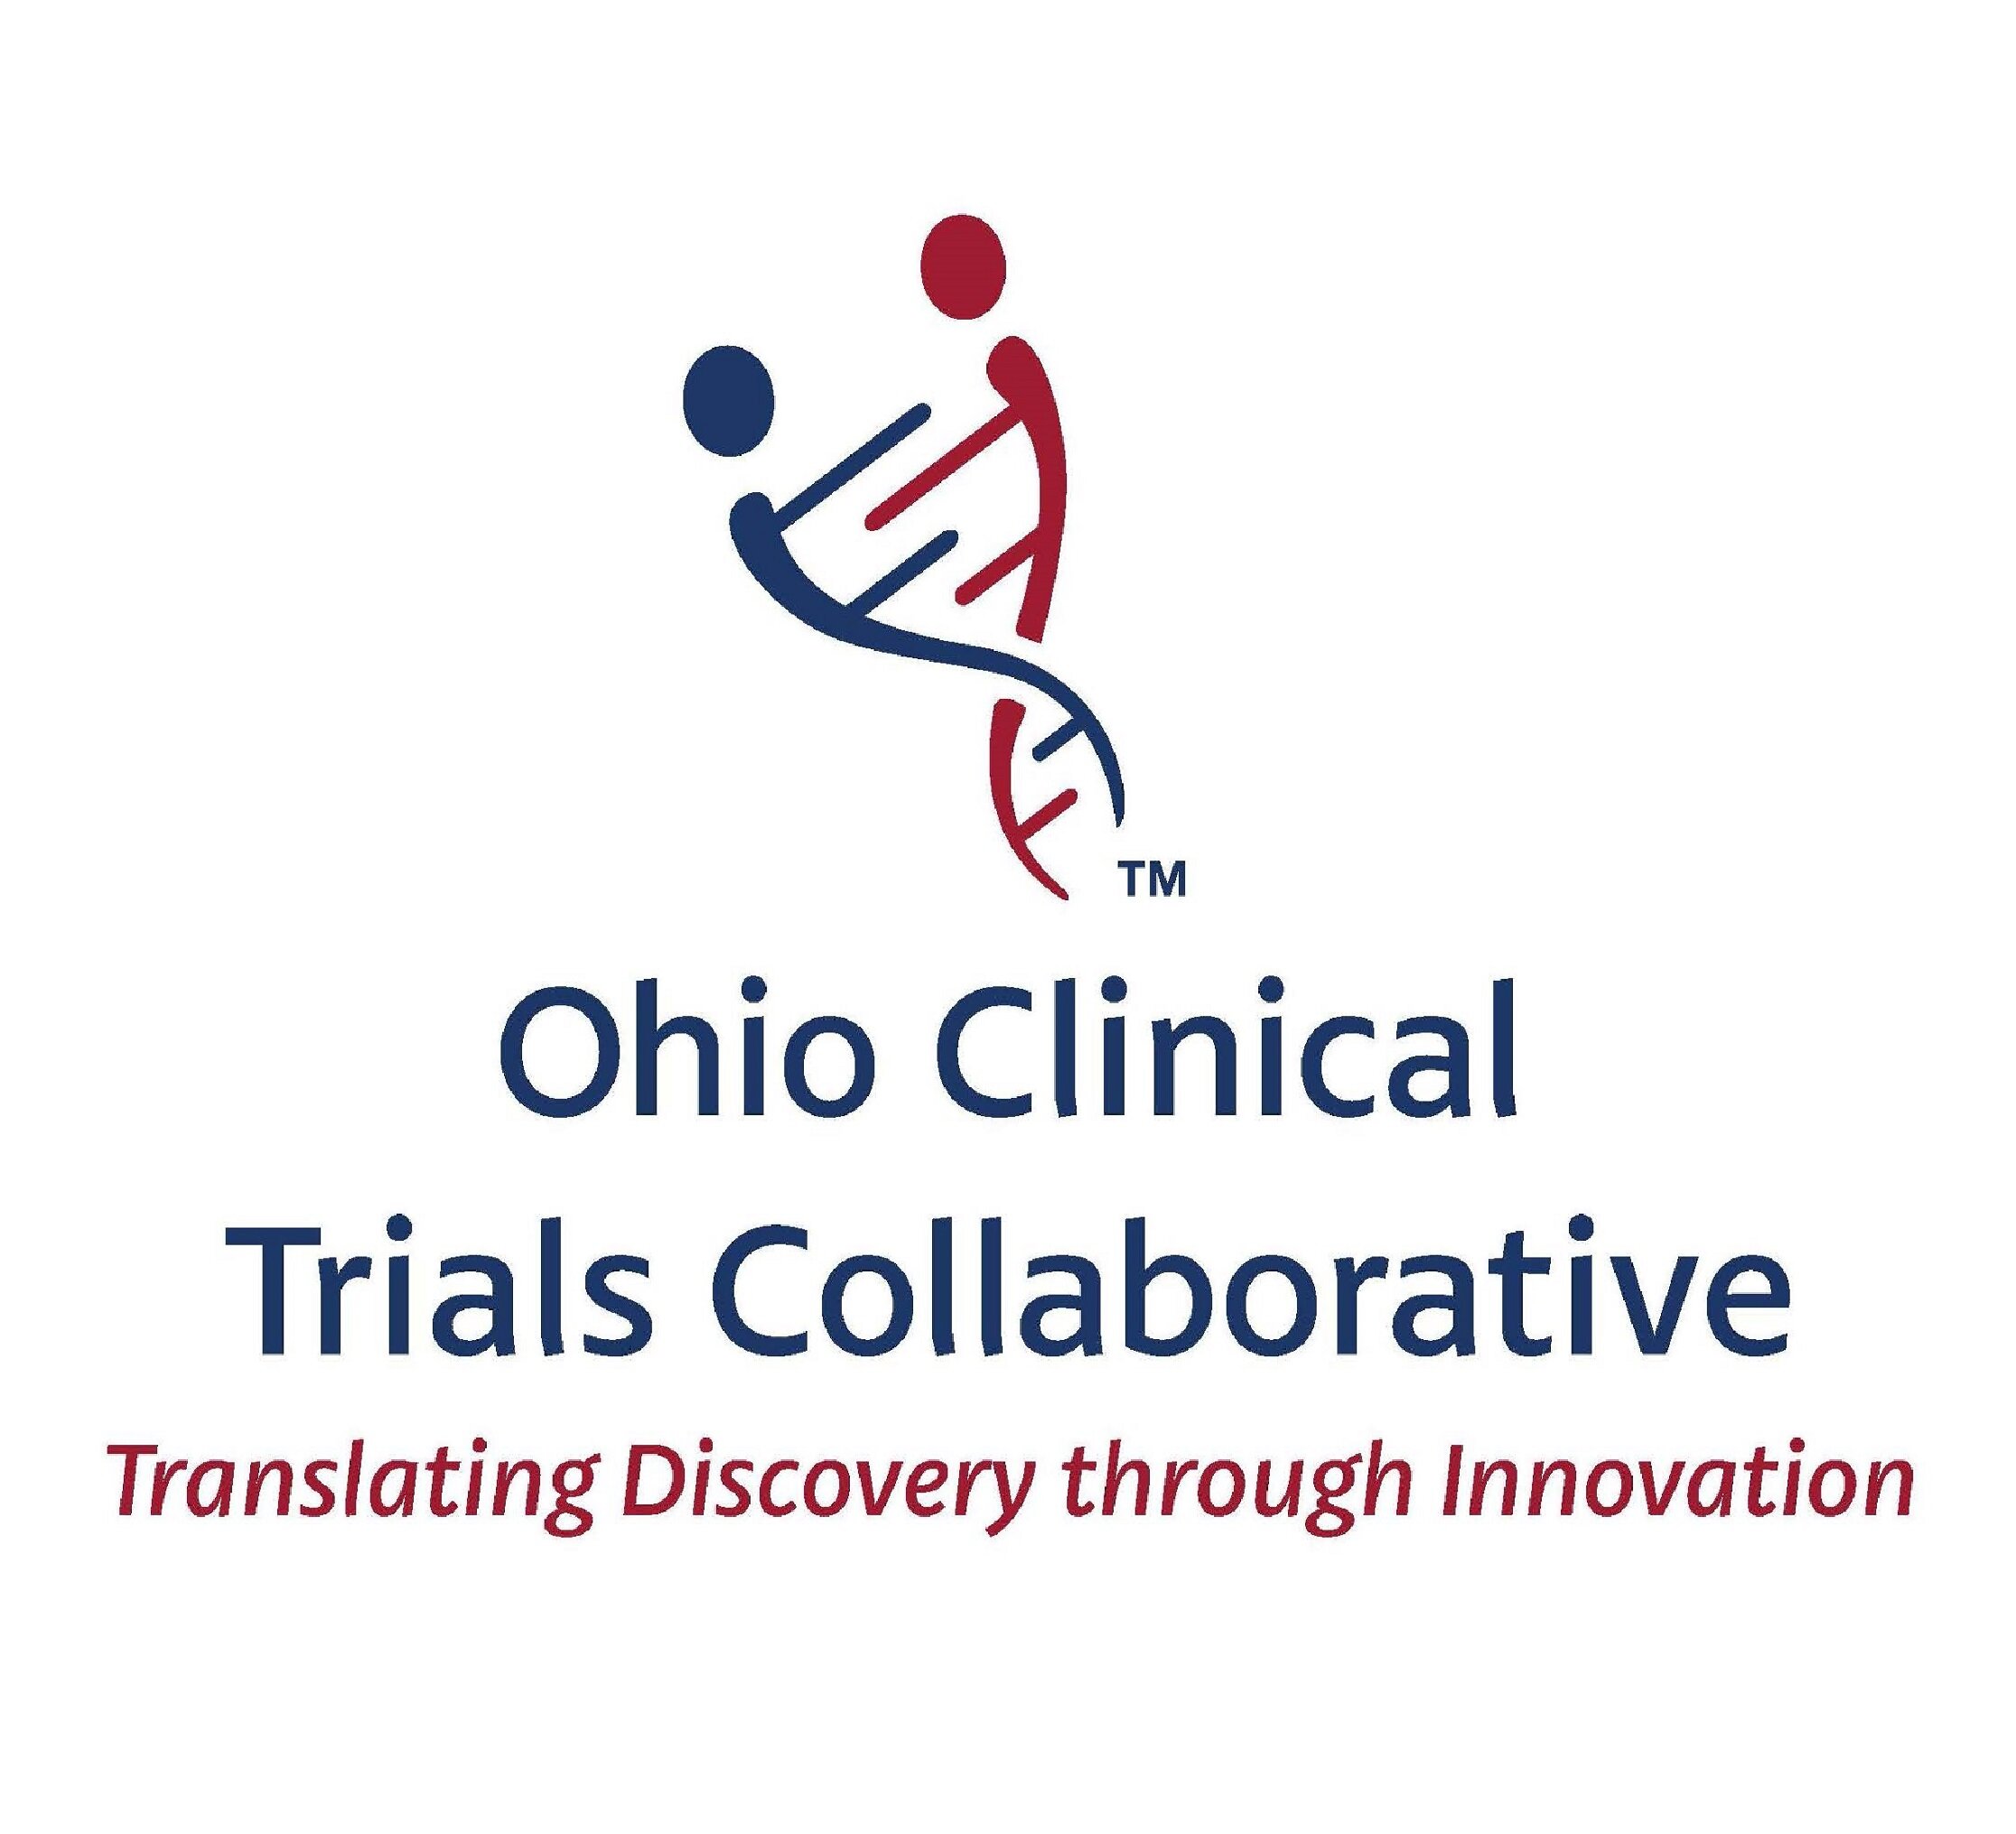 The Ohio Clinical Trials Collaborative